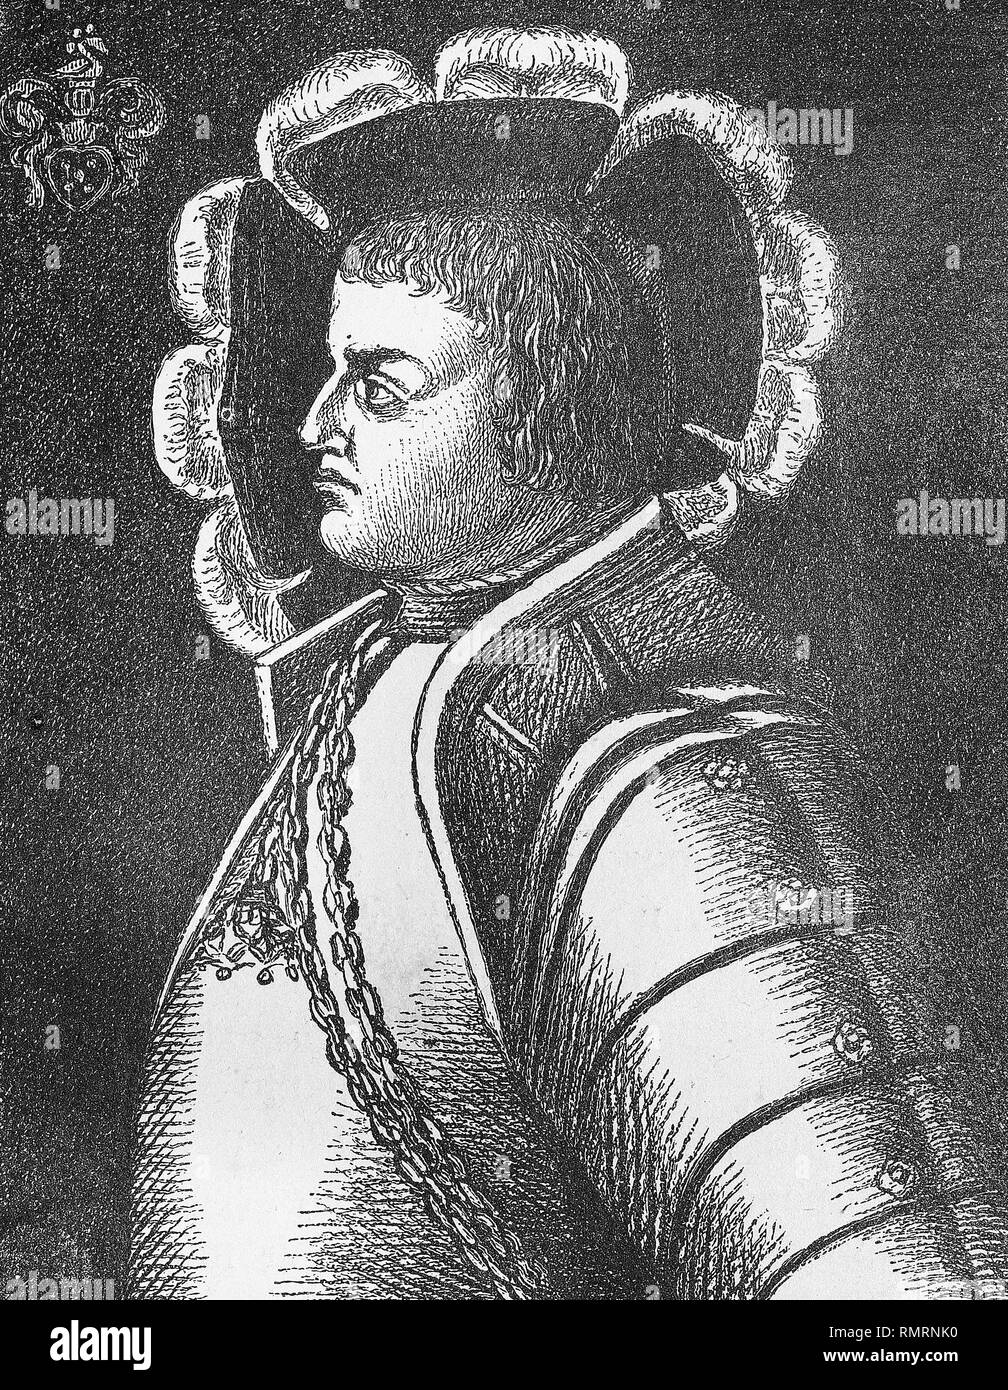 Portrait de Franz von Sickingen. Gravure médiévale Banque D'Images